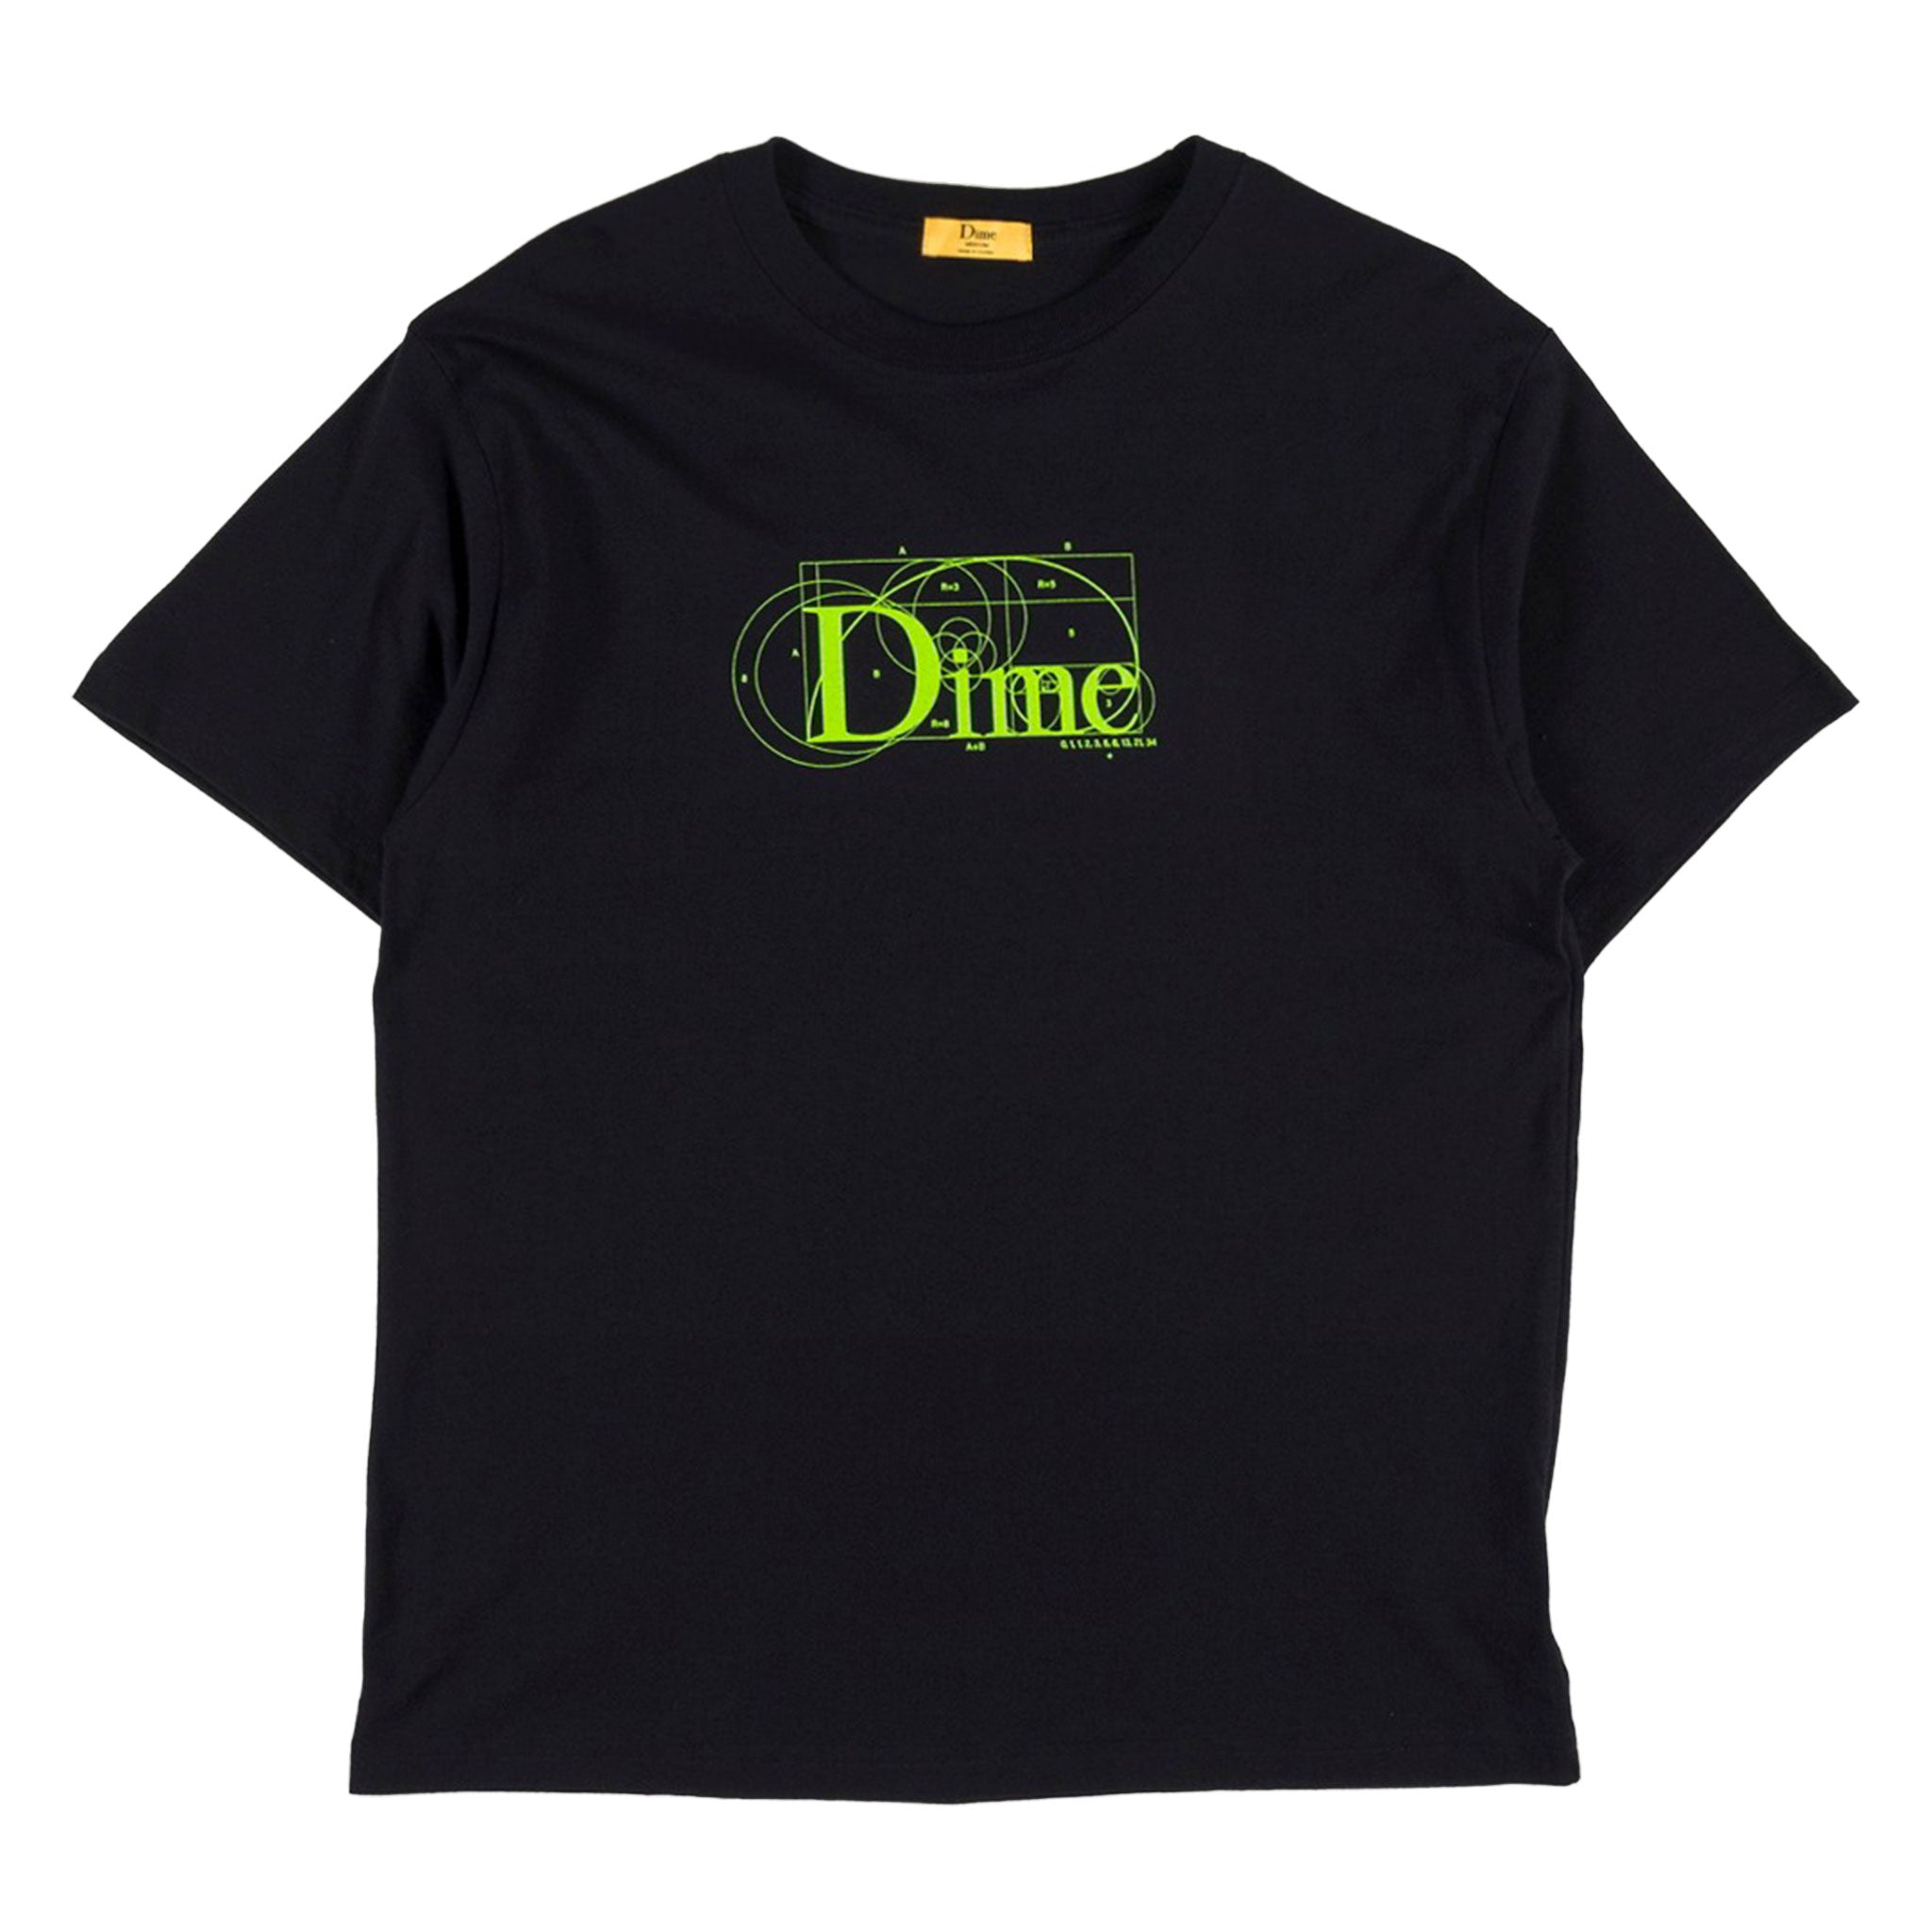 納得できる割引 DIME スモール Tシャツ ダイム クラシックスモールロゴ 